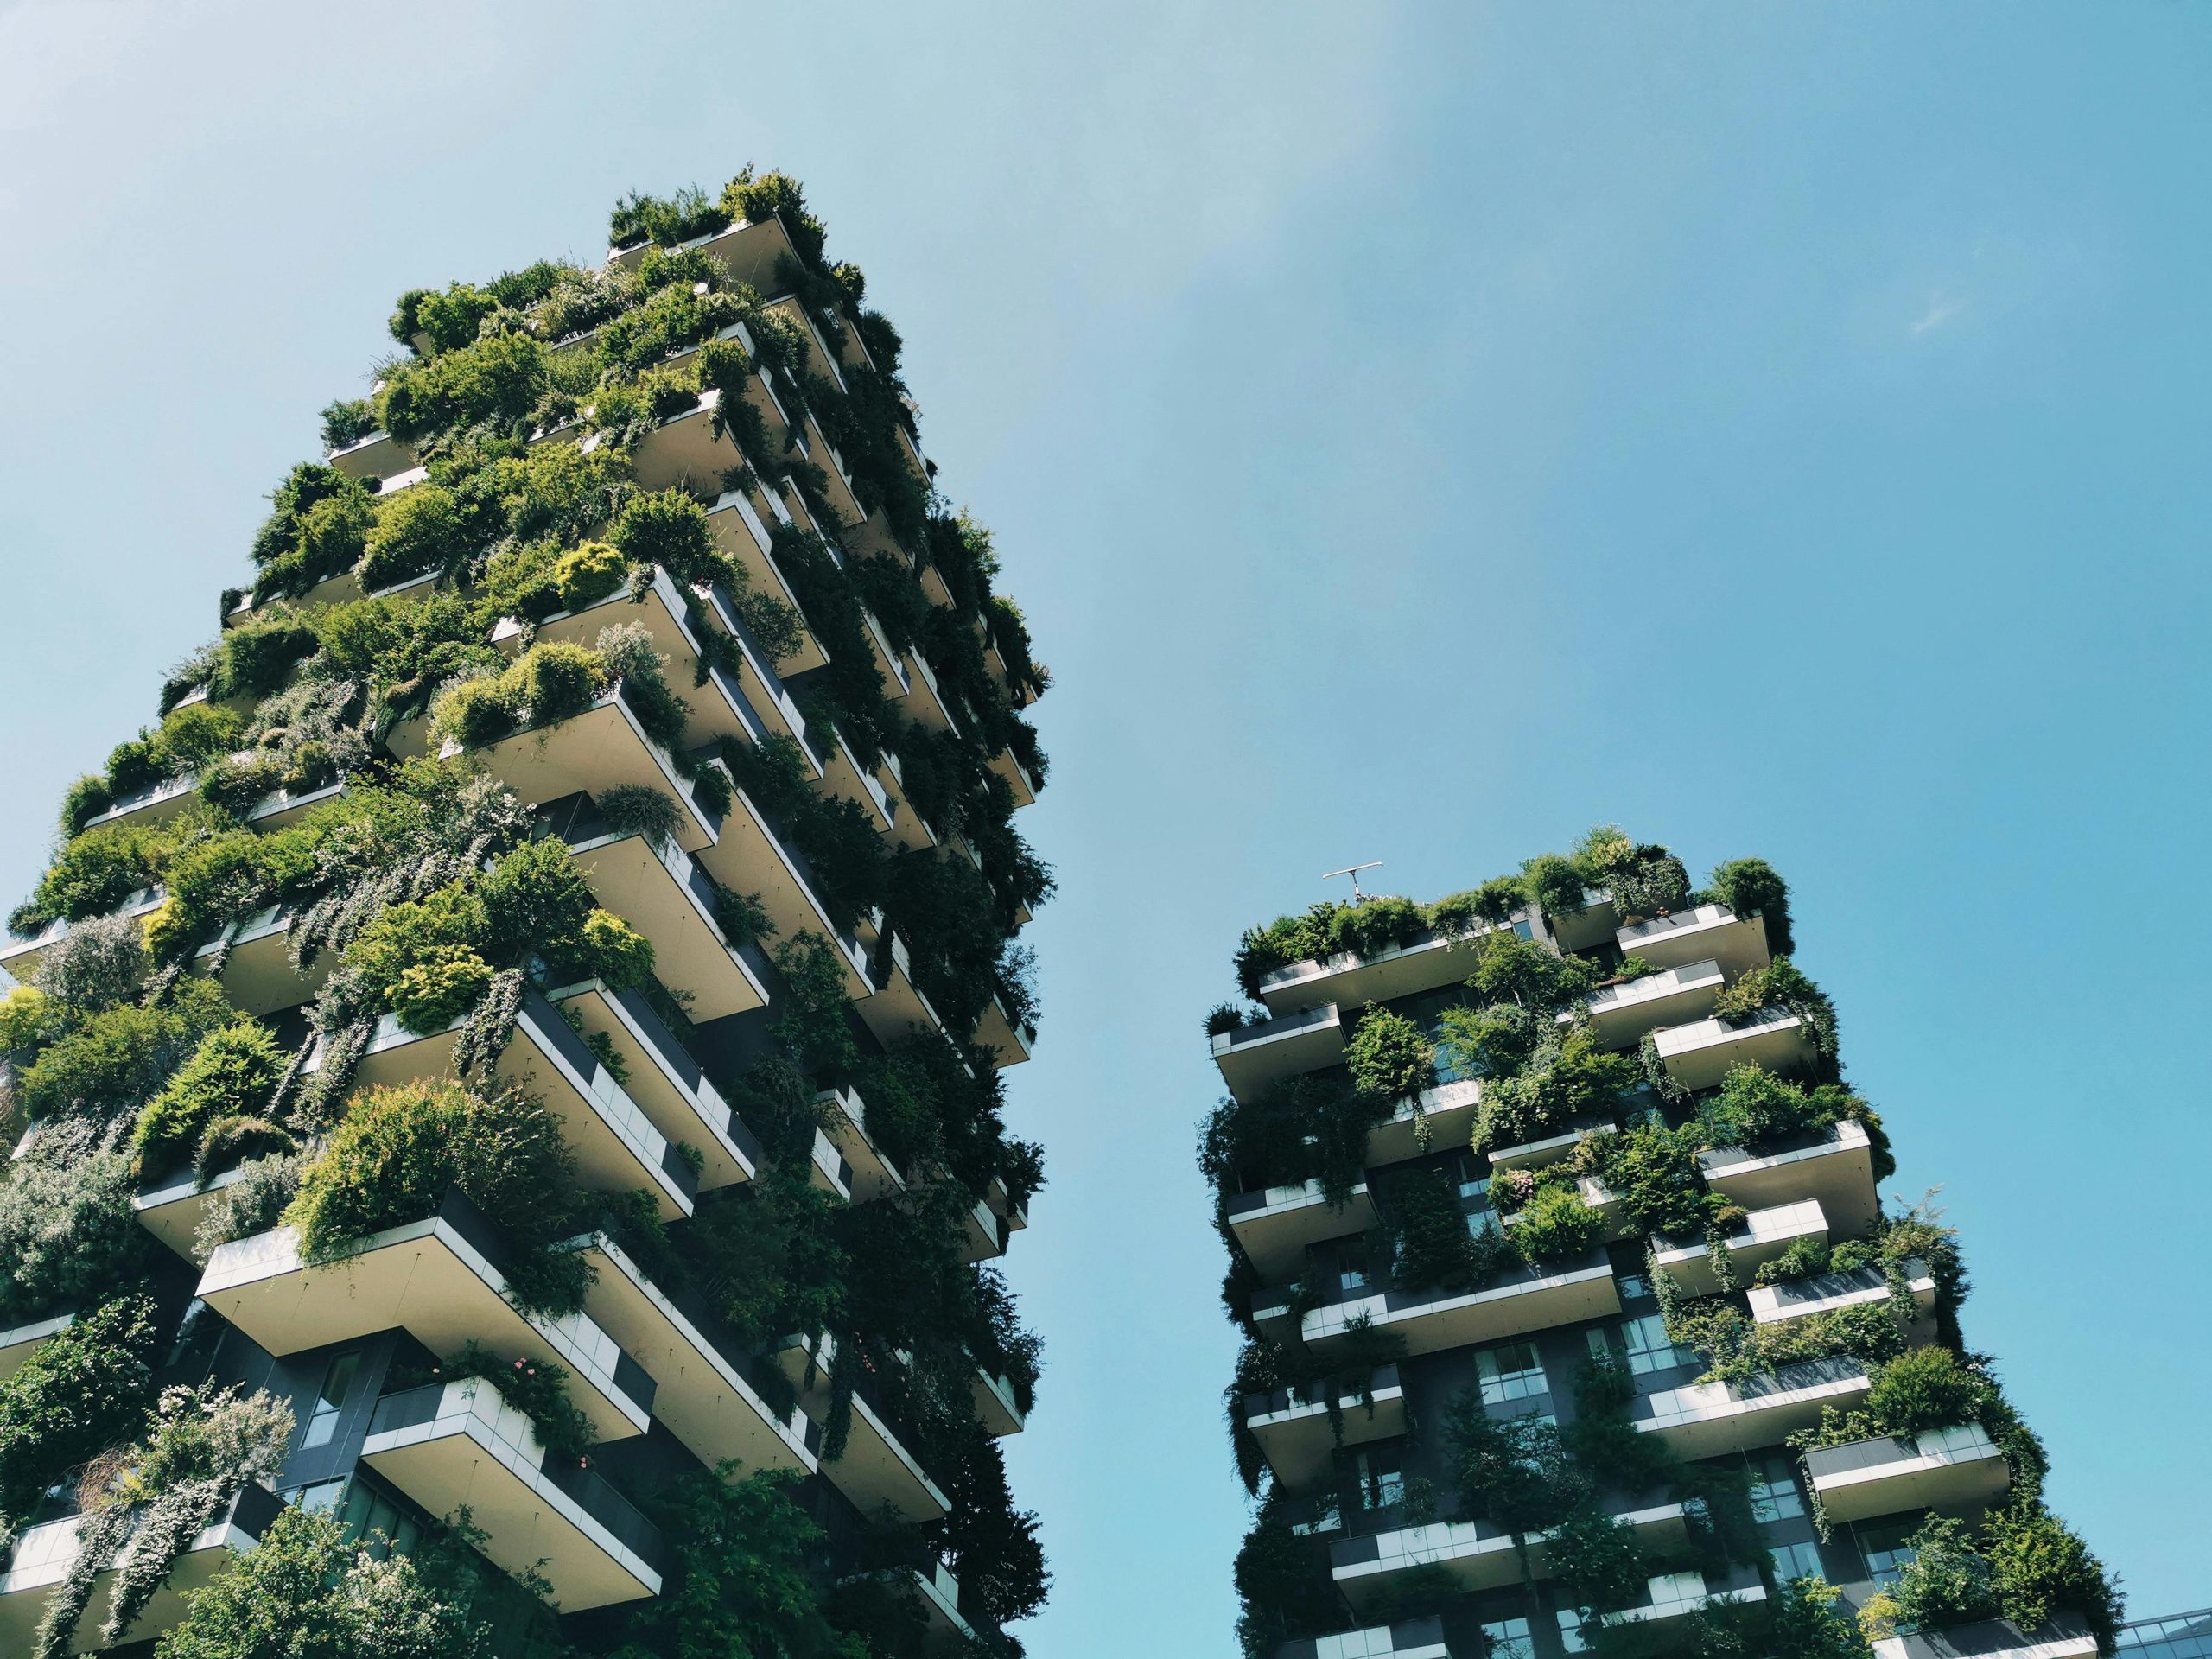 Bosco Verticale, la visione di architettura sostenibile che rivoluziona il concetto di spazio urbano